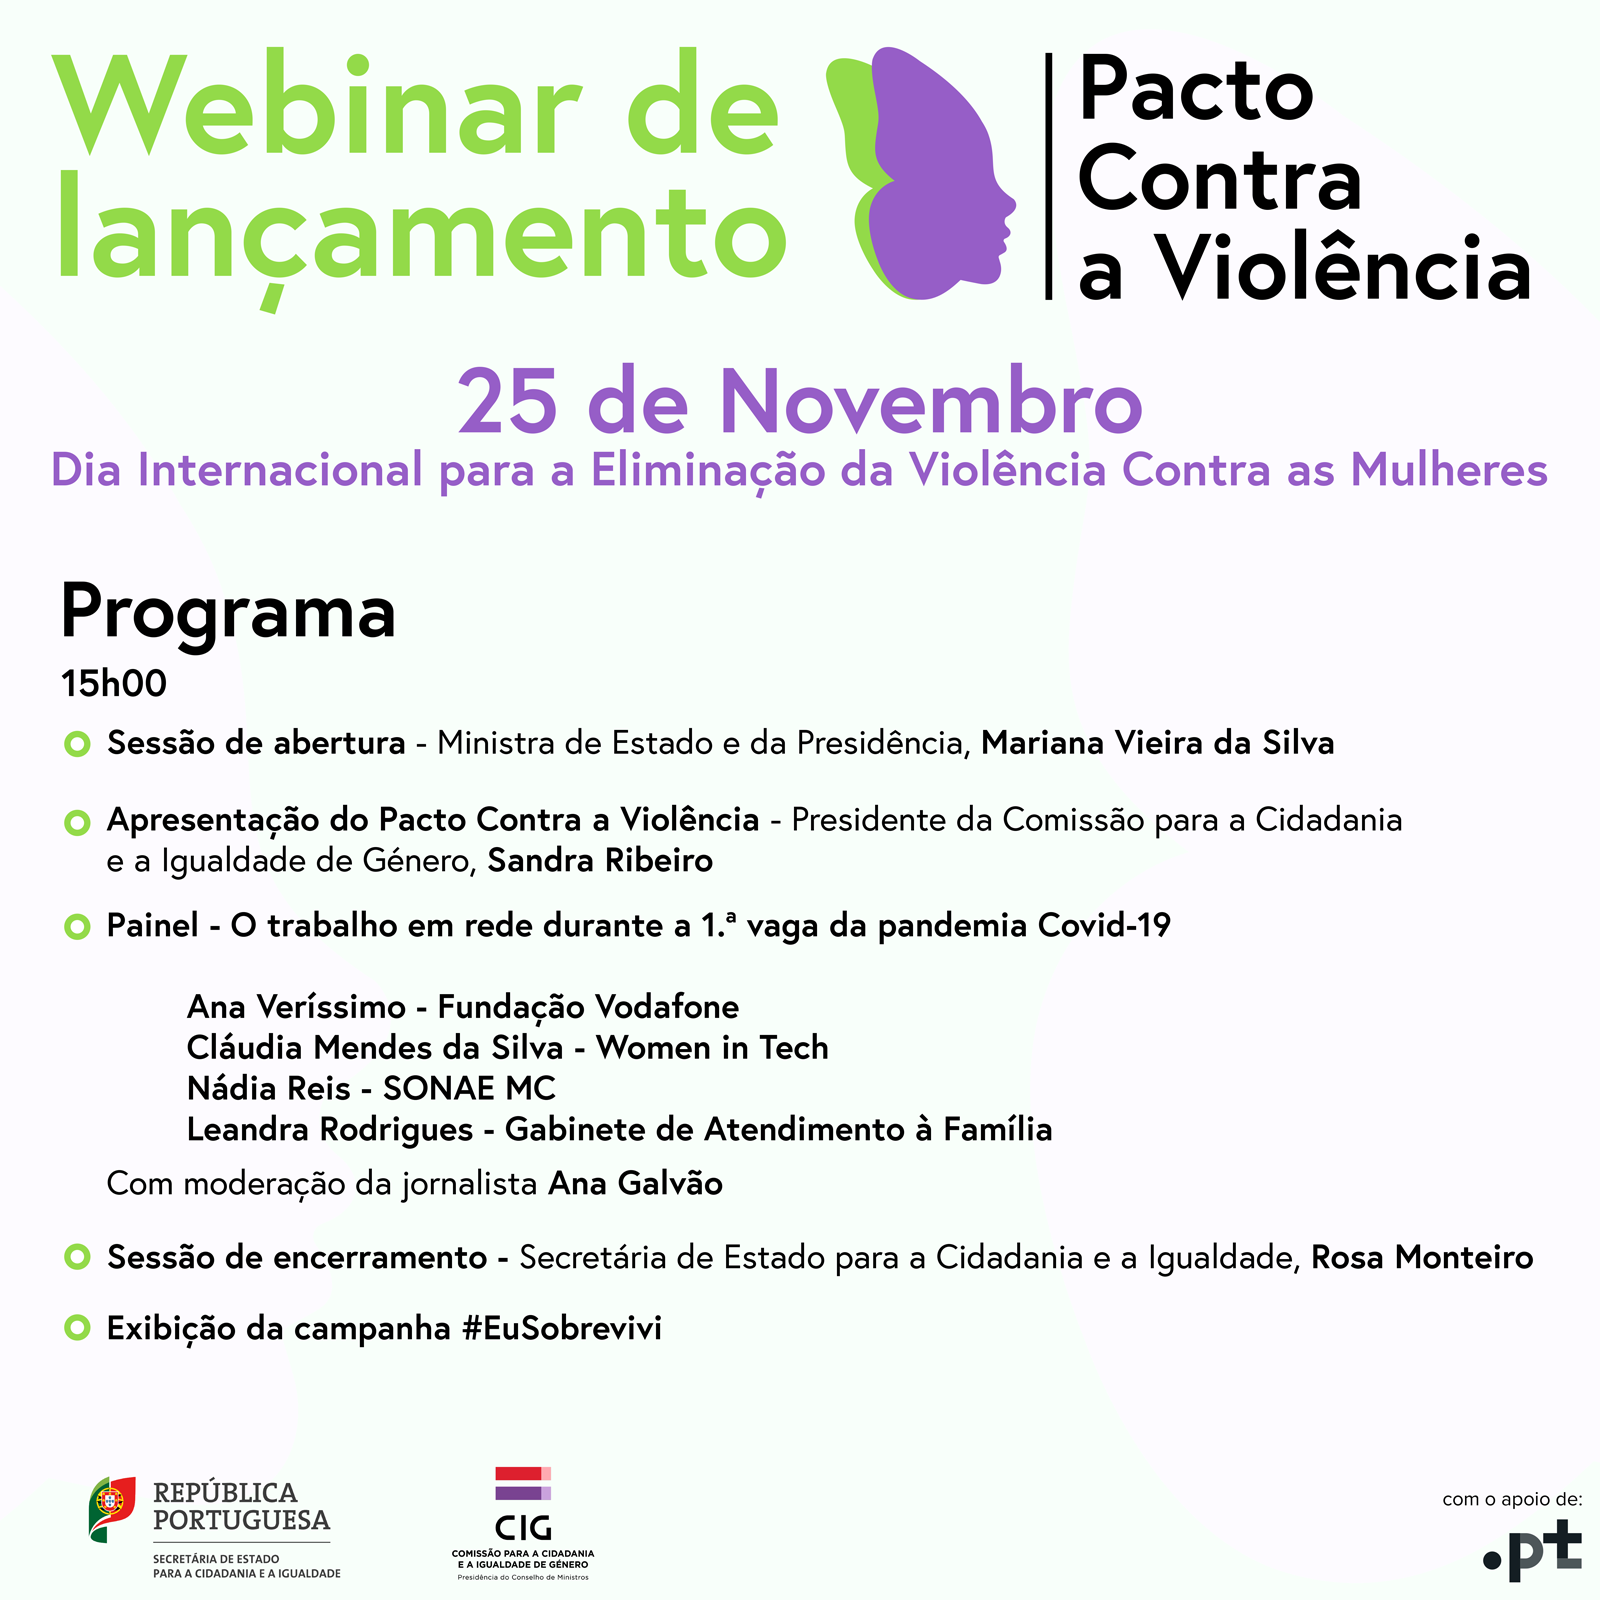 Apresentação do Pacto Contra a Violência assinala Dia Internacional para a Eliminação da Violência Contra as Mulheres